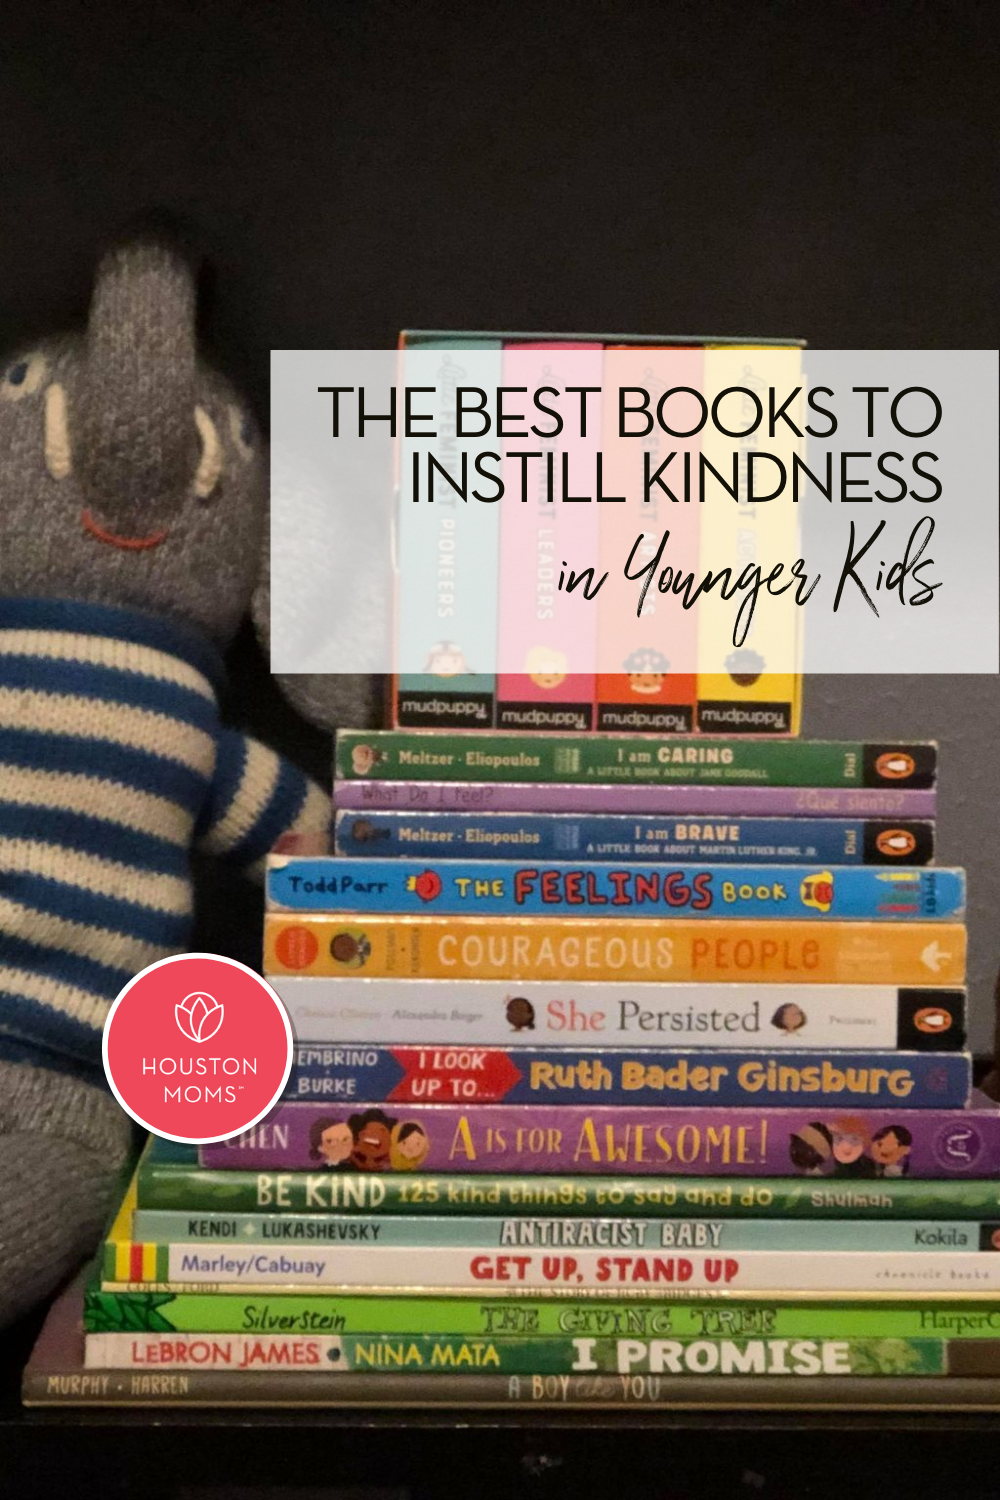 Houston Moms "The Best Books to Instill Kindness in Younger Kids" #houstonmoms #momsaroundhouston